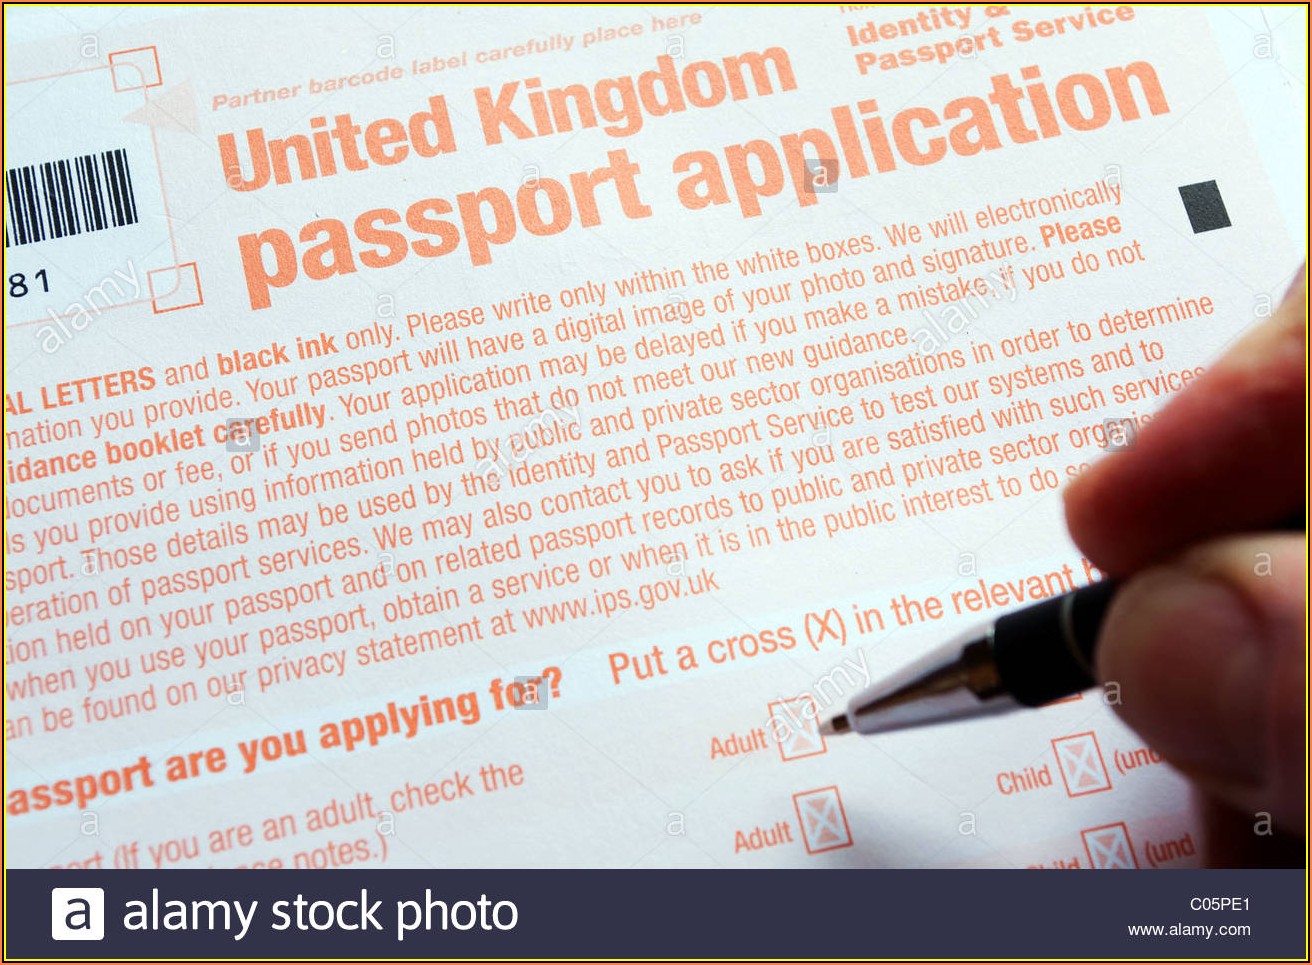 Uk Passport Renewal Application Form Download Pdf